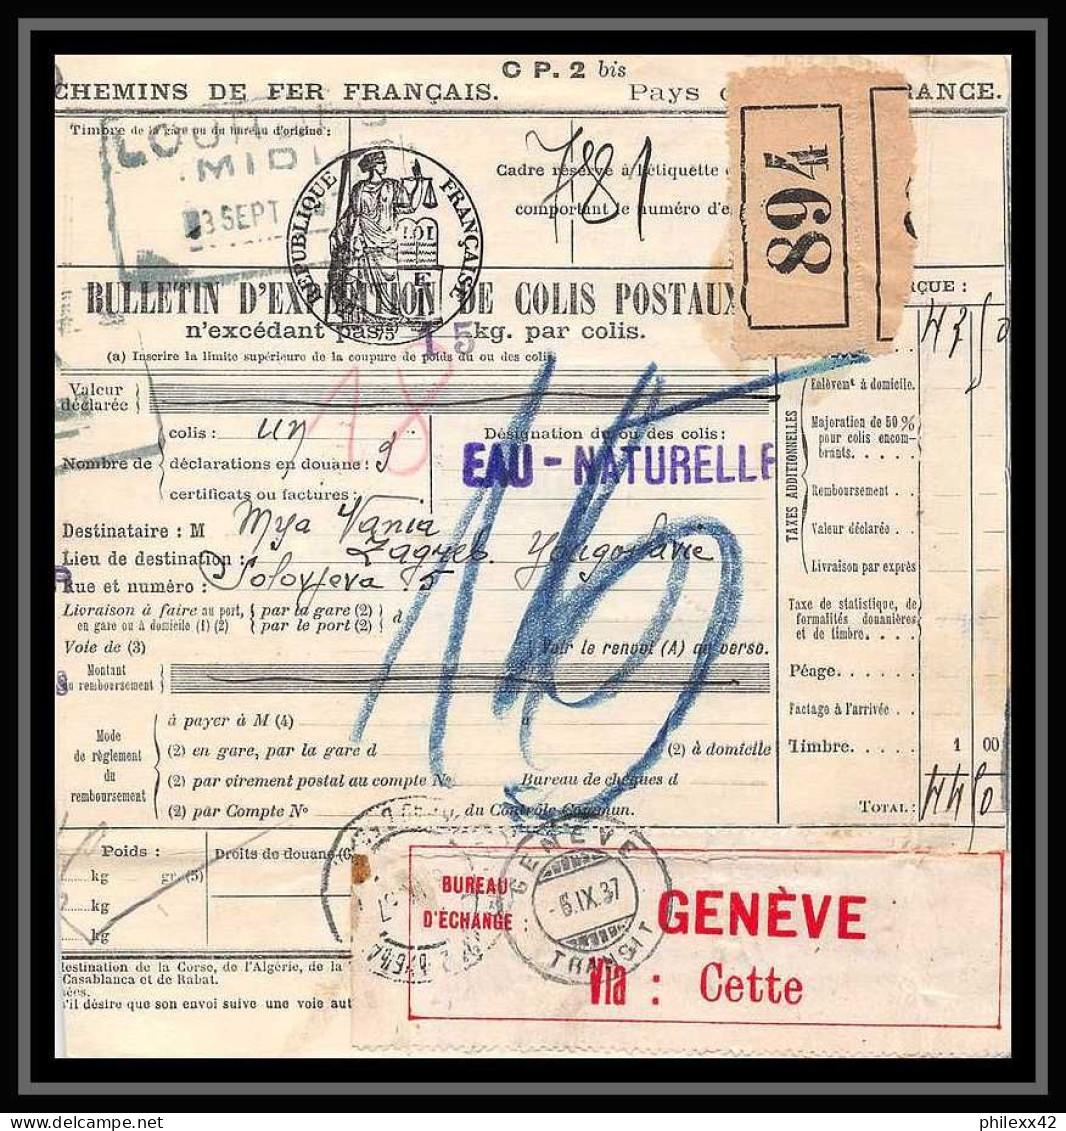 25109 Bulletin D'expédition France Colis Postaux Fiscal Lourdes 3/9/1937 Zagreb Croatie Croatia GENEVE Suisse (Swiss) - Covers & Documents